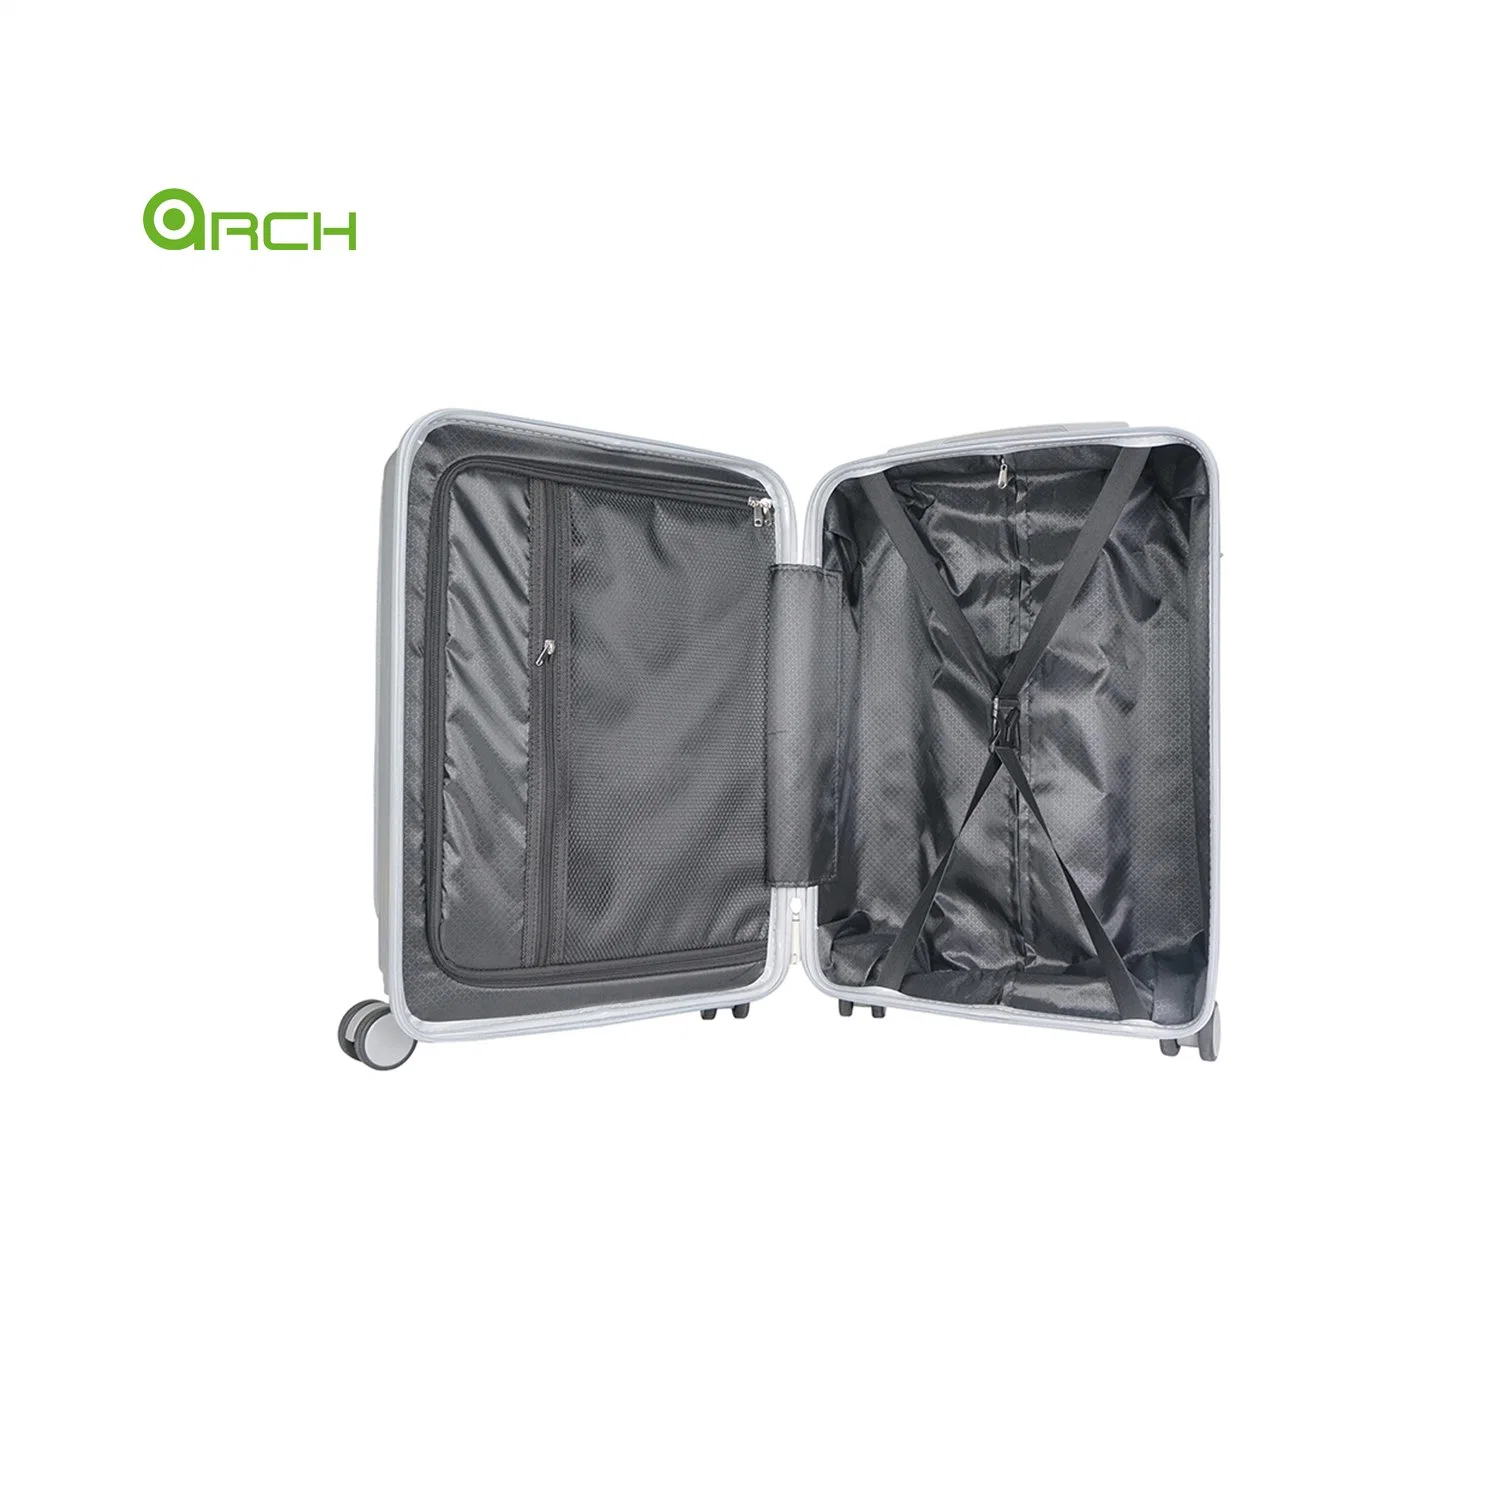 19" ABS maleta rígida equipaje de carrito con bolsillo delantero y. Ruedas de vuelo